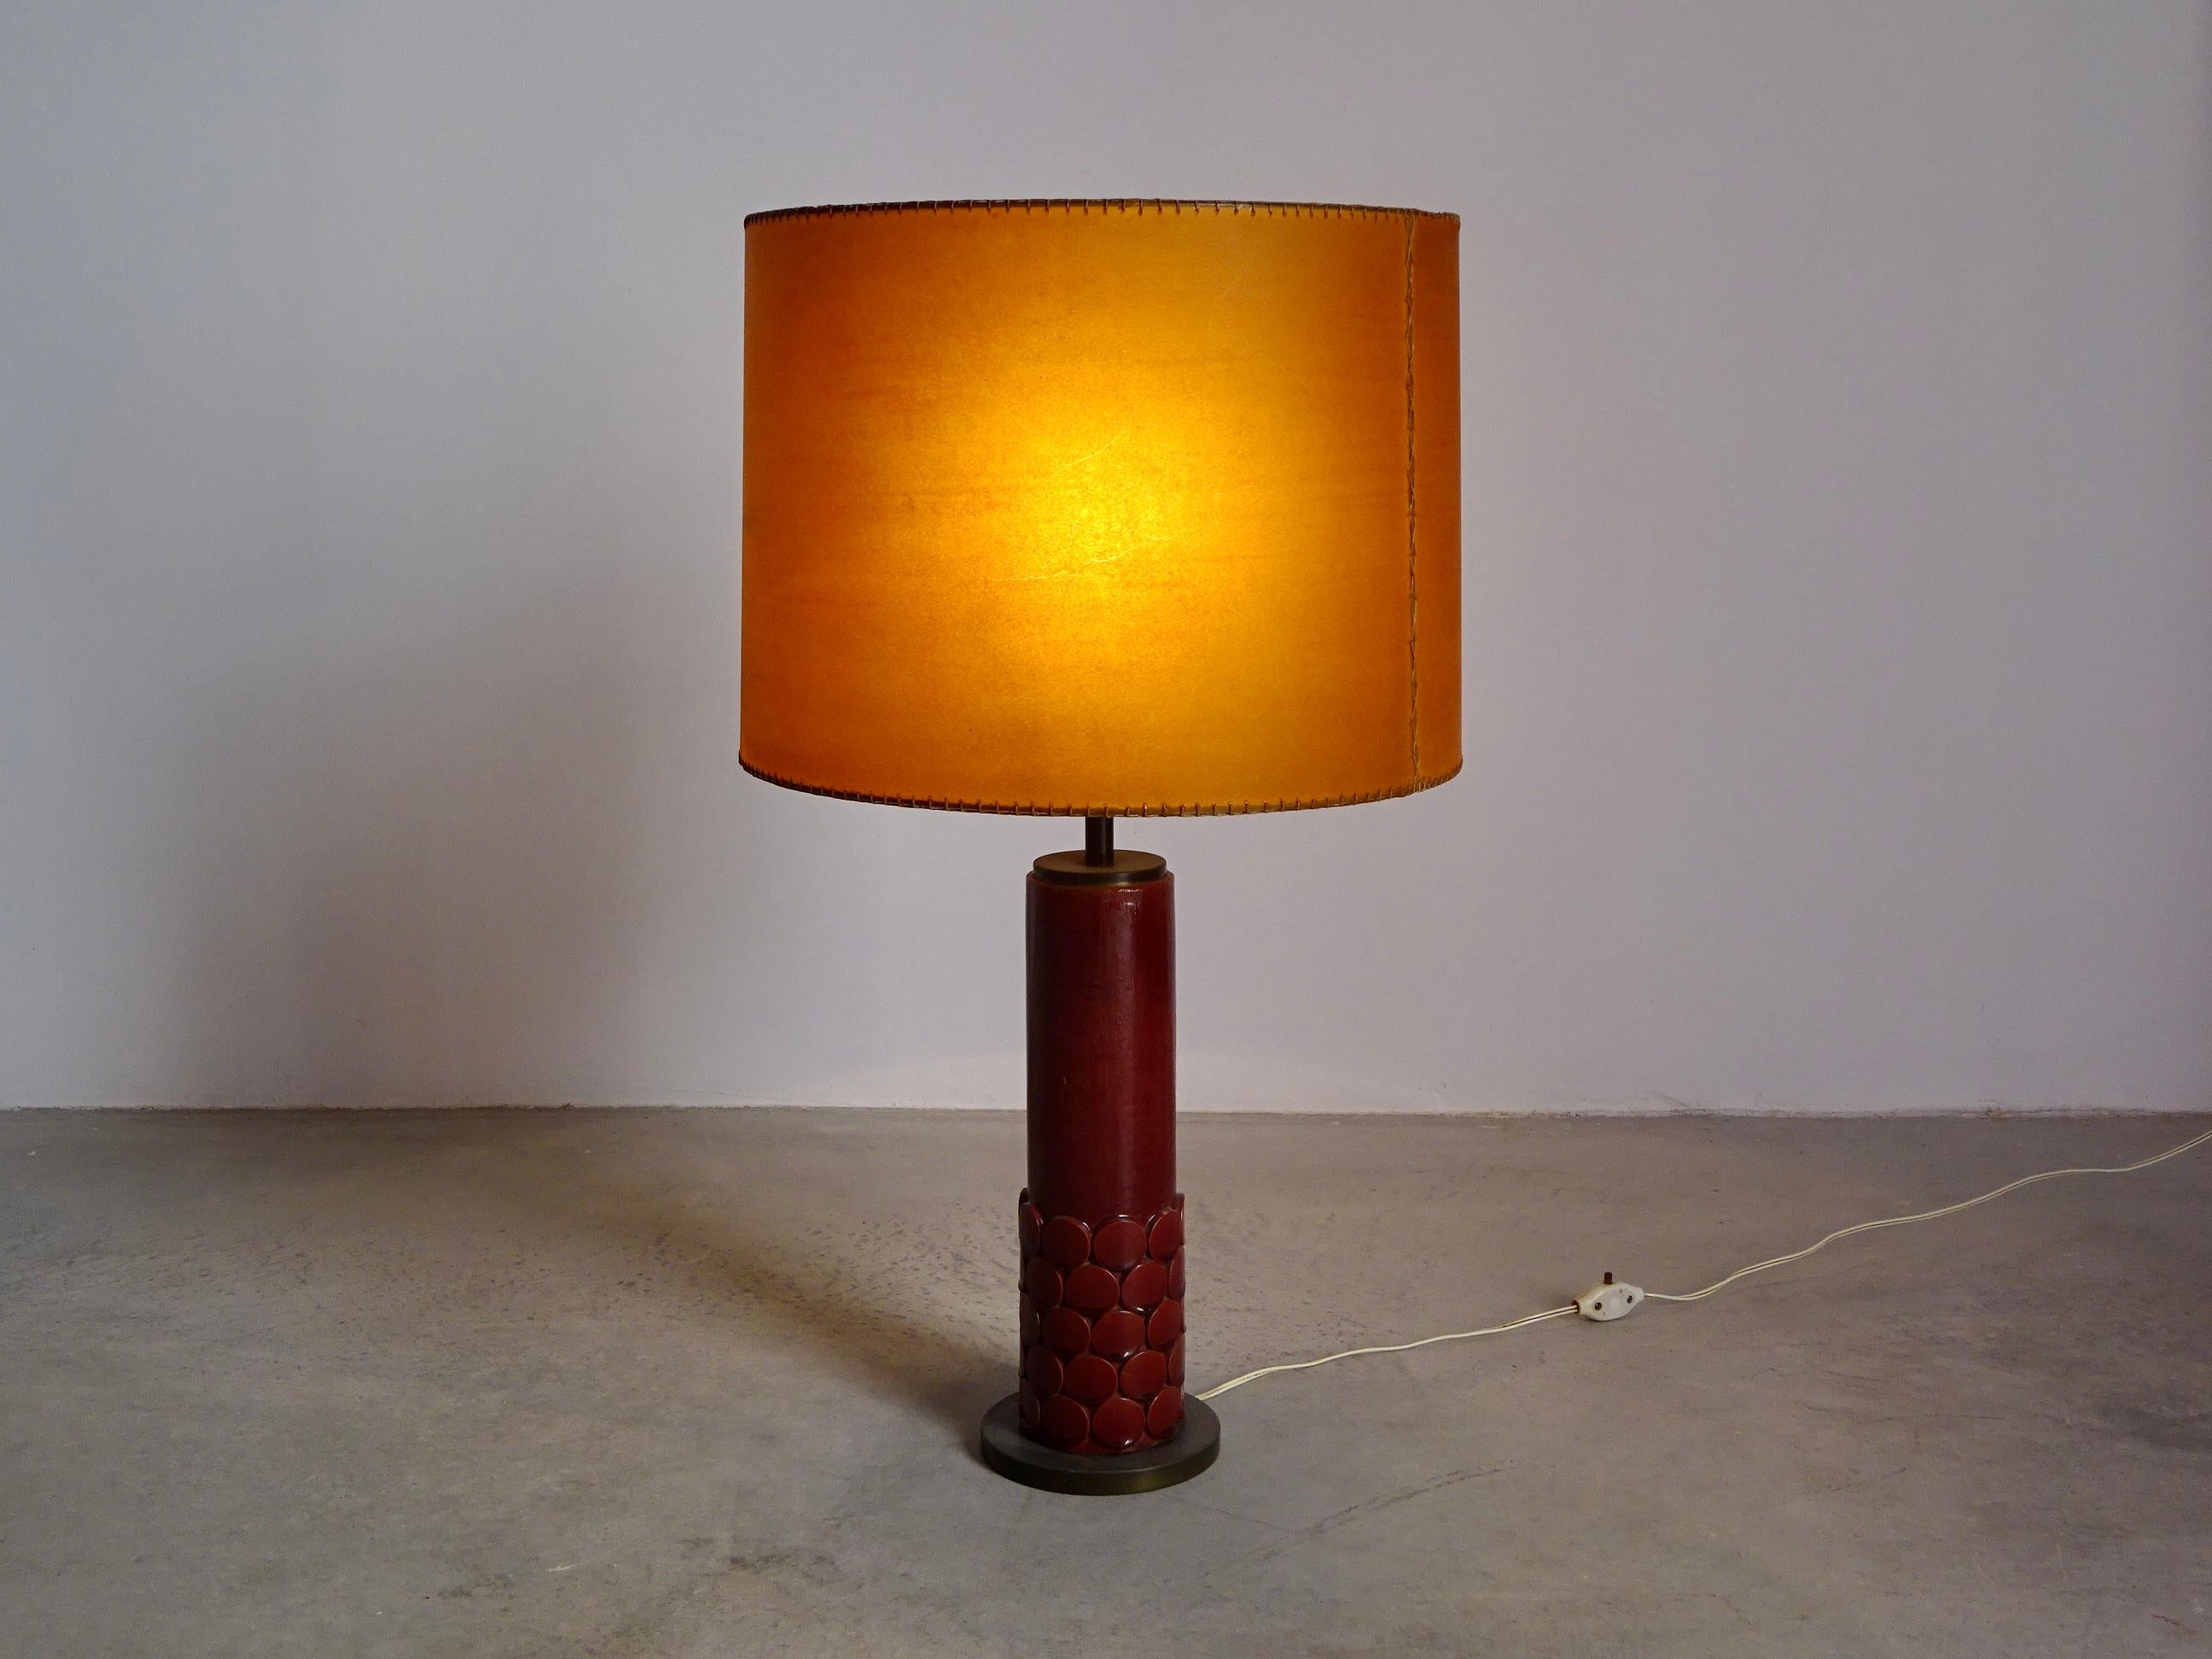 Lampe de table conçue en 1973 par Jordi Vilanova i Bosch en base de laiton, céramique de Jordi Aguadé et abat-jour en cuir cousu. La lampe a une belle patine, elle est prête à l'emploi. Jordi Vilanova (1925-1988) a travaillé intensément à la